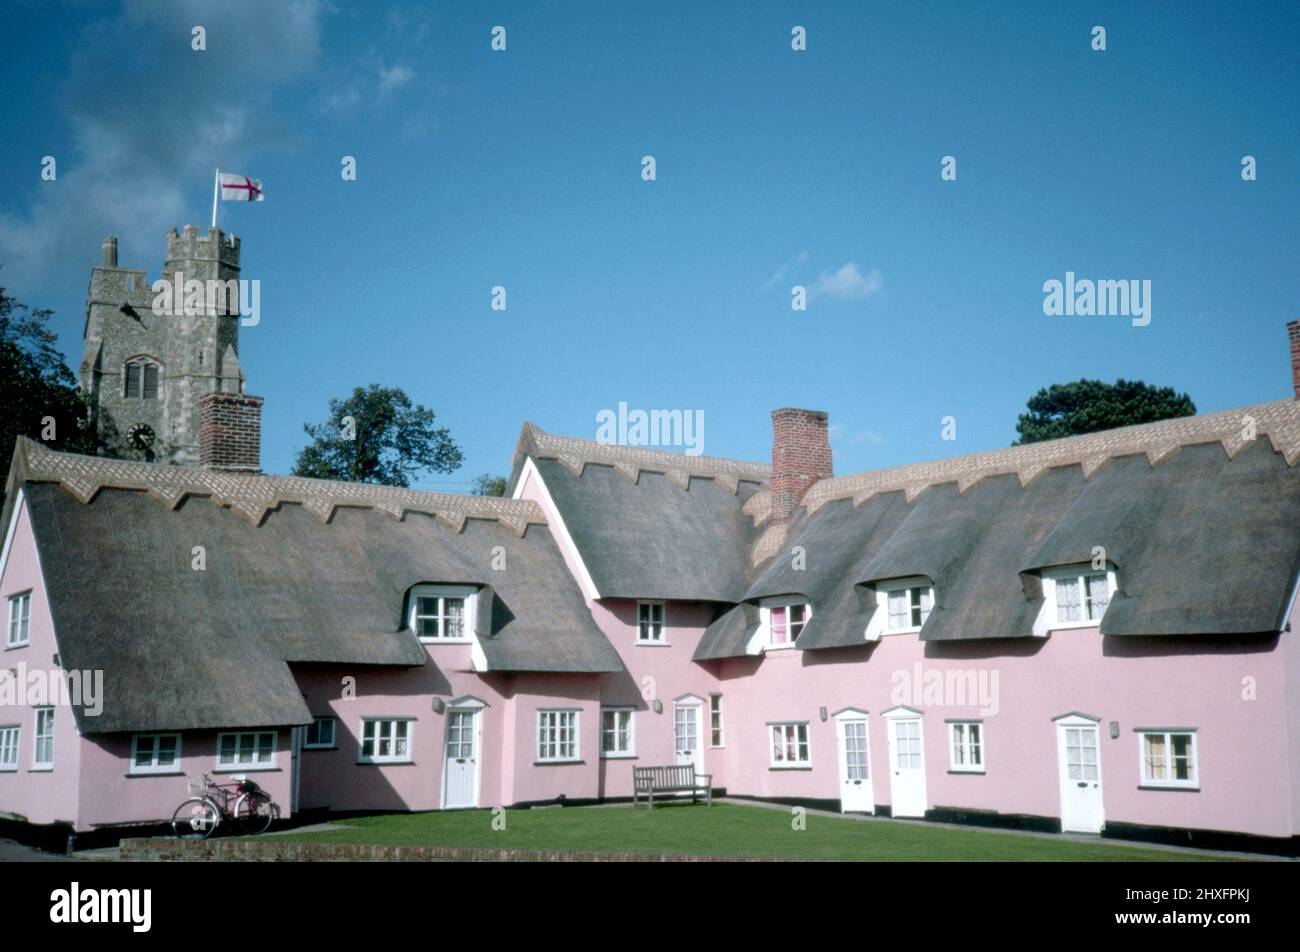 Malerischer Blick auf rosafarbene Reethäuser und das Kirchdorf Cavendish, Suffolk, England, mit hellblauem Himmel und Kopierfläche. Stockfoto